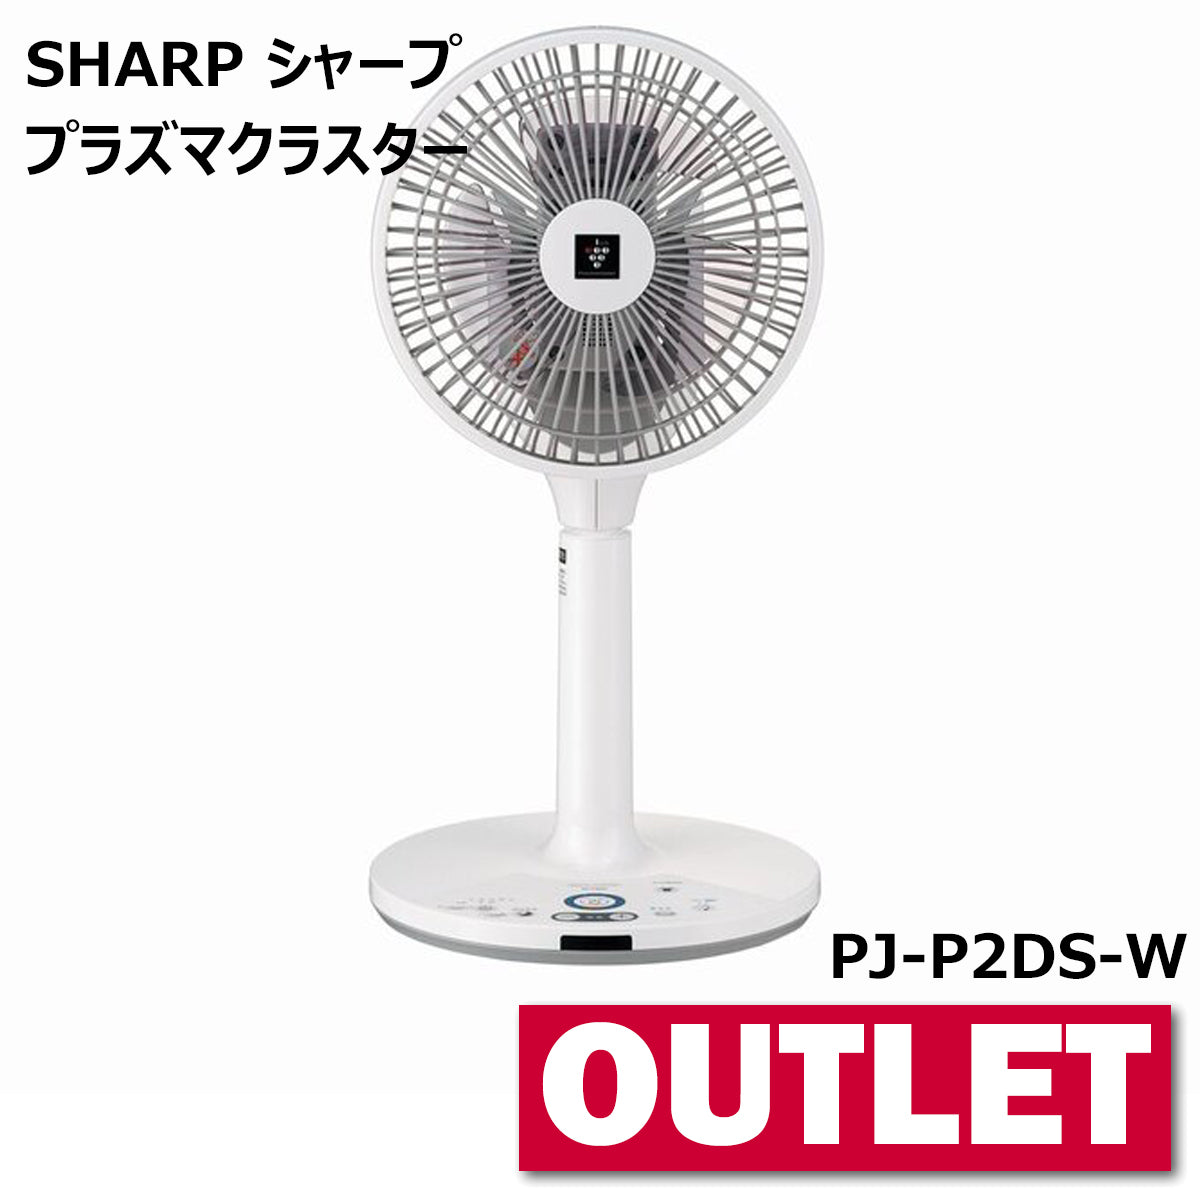 SHARP シャープ プラズマクラスター扇風機 3Dファン PJ-P2DS-W【沖縄県 